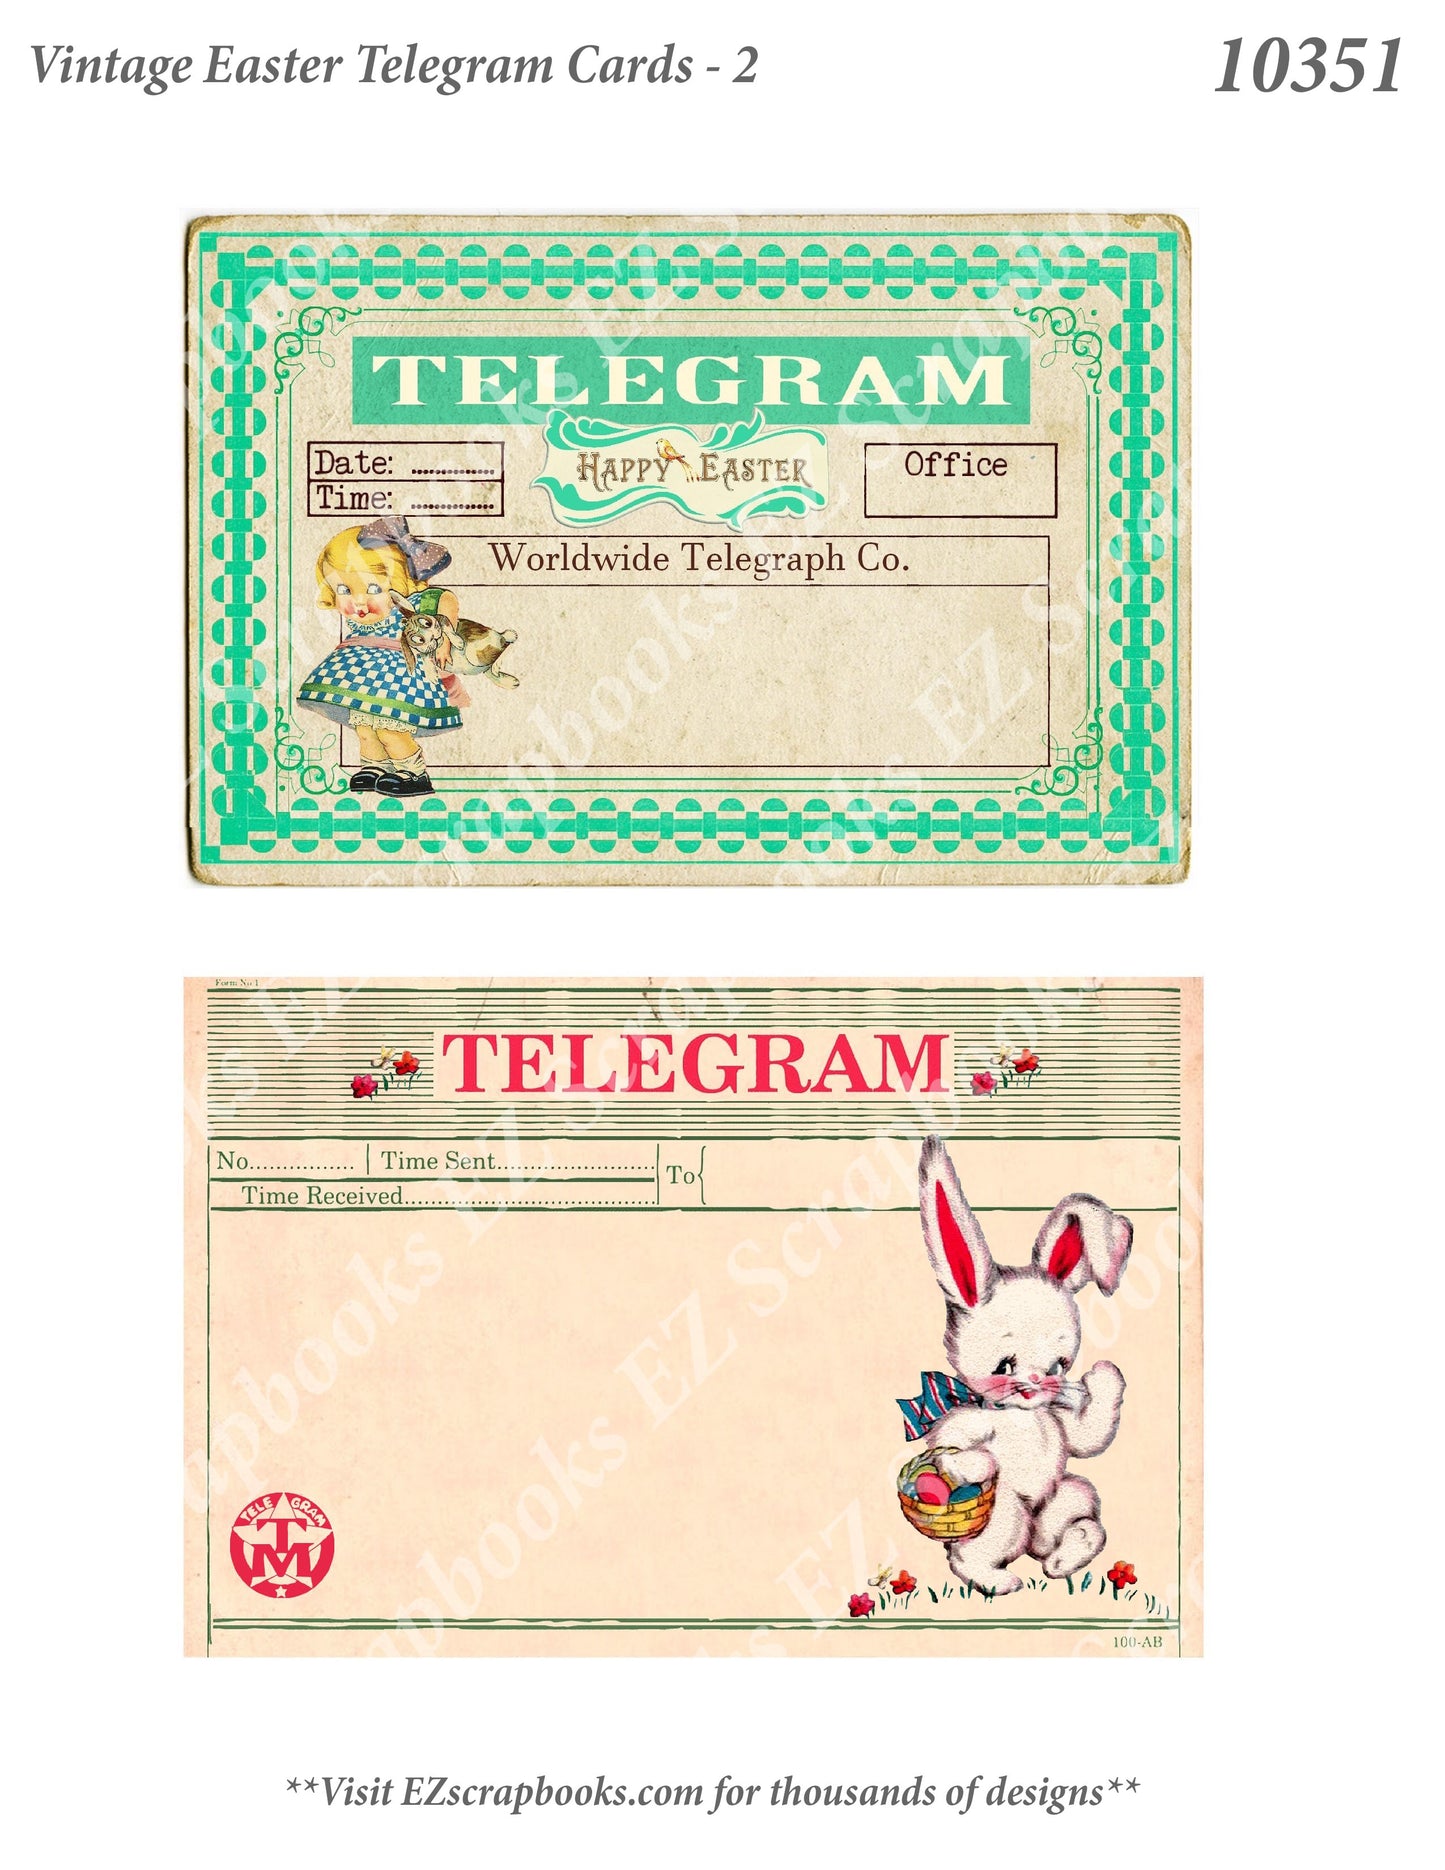 Vintage Easter Telegram Cards 2 - 10351